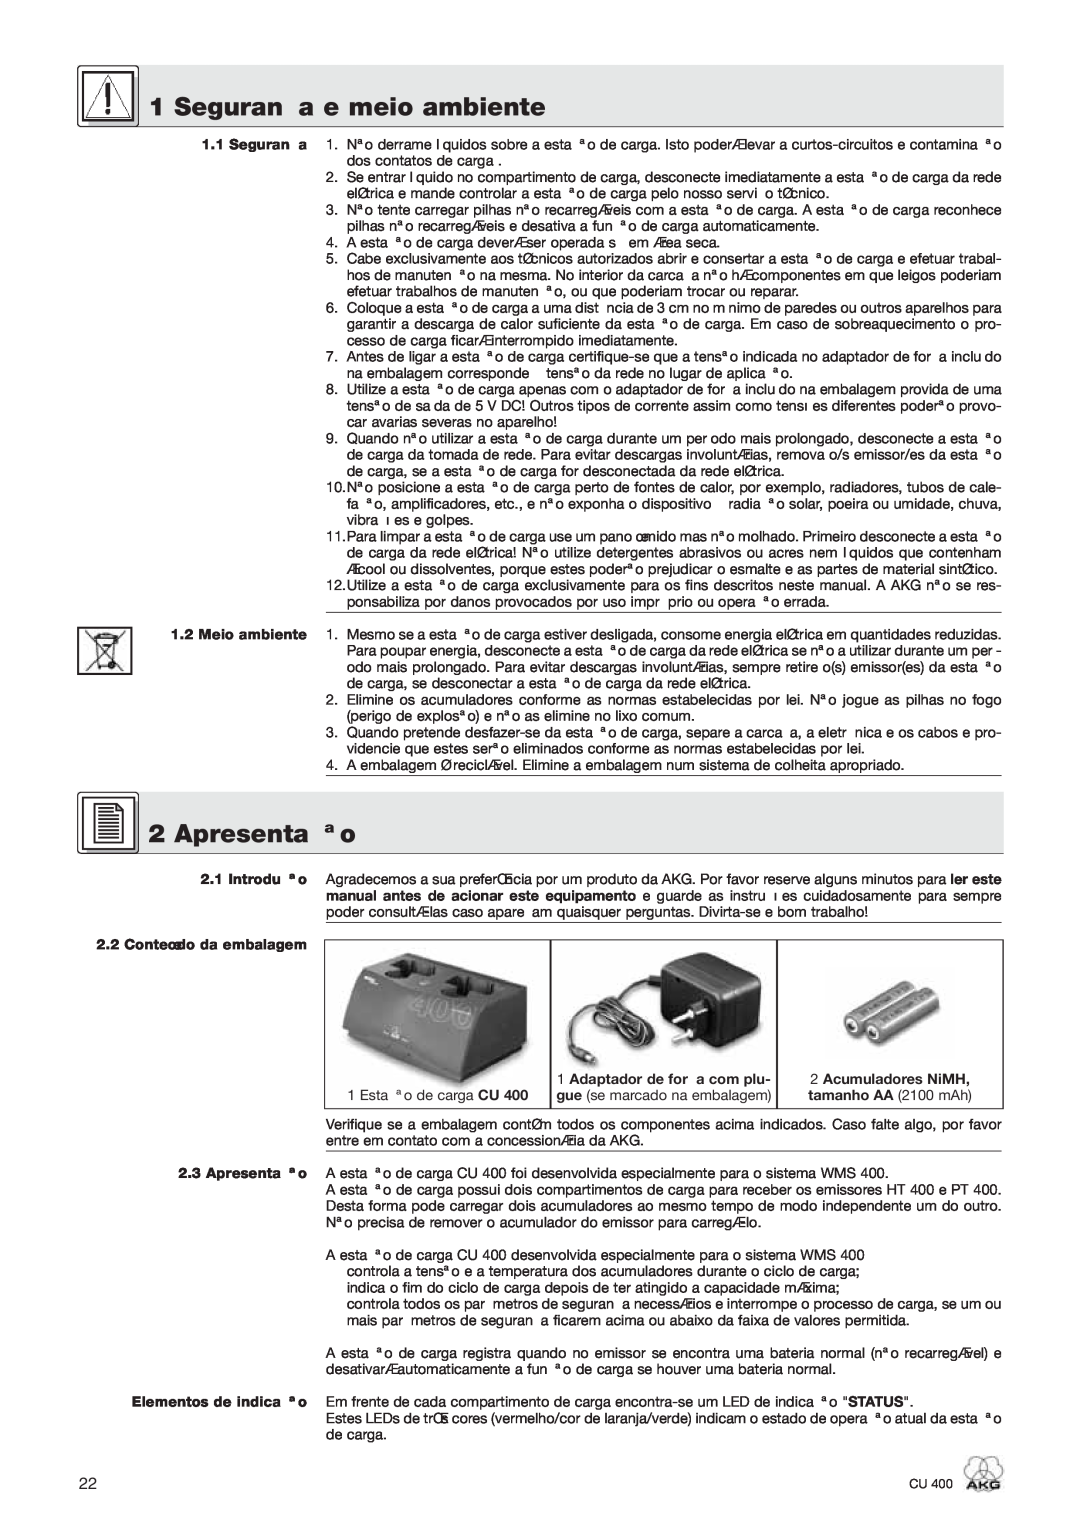 AKG Acoustics CU 400 Segurança e meio ambiente, Apresentação, Introdução 2.2 Conteúdo da embalagem, Acumuladores NiMH 